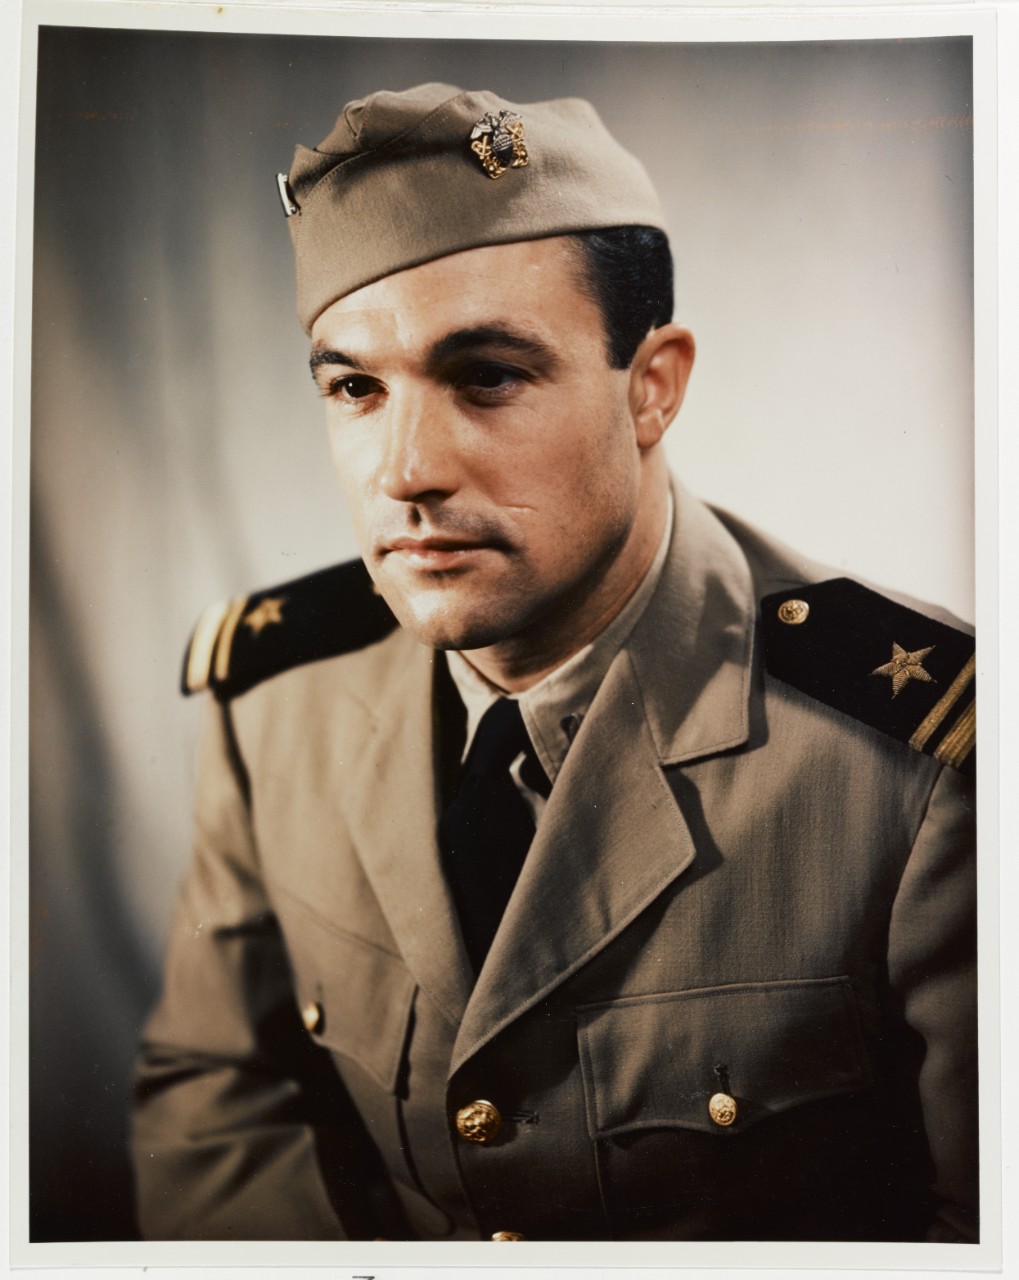 Portrait of Lieutenant Junior Grade Gene Kelly, USNR. Circa 1945